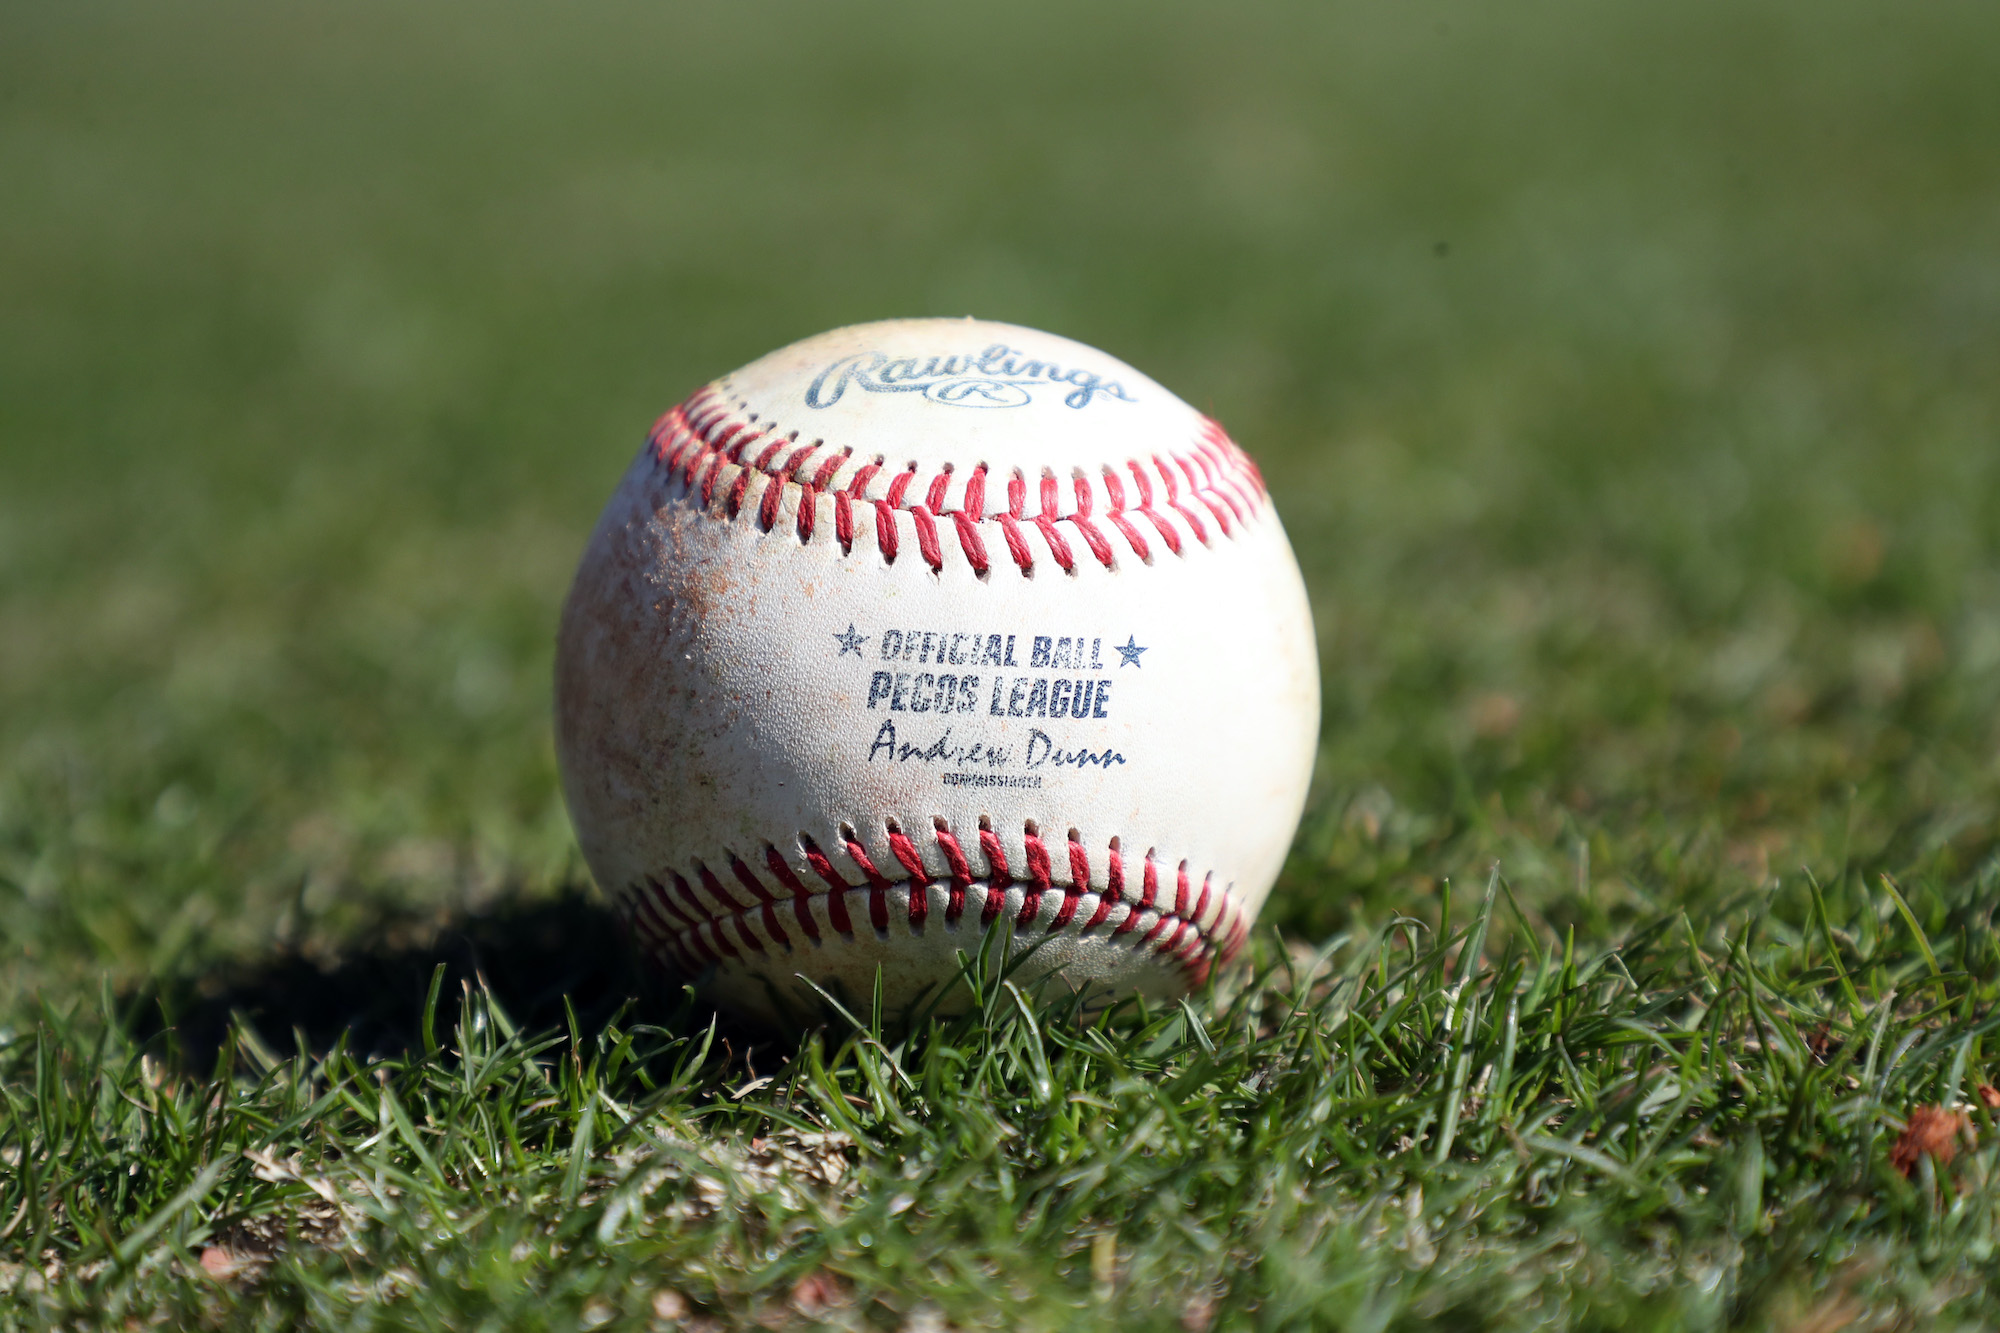 A Pecos League baseball in the grass.